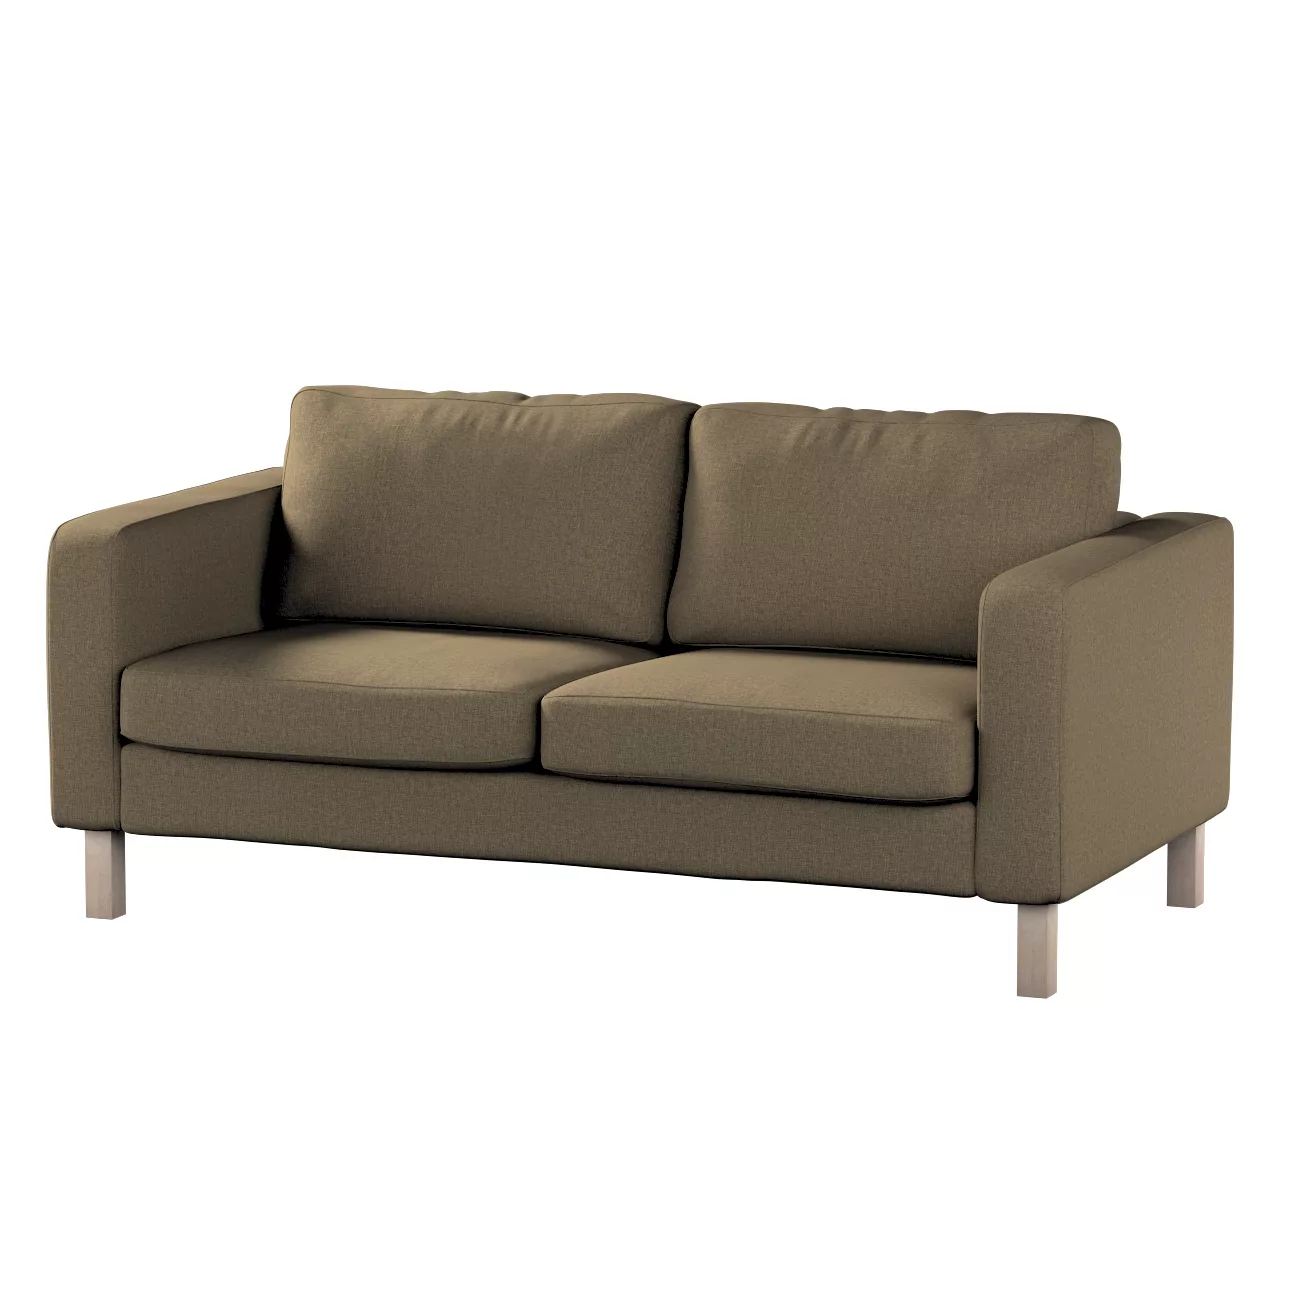 Bezug für Karlstad 2-Sitzer Sofa nicht ausklappbar, grau-braun, Sofahusse, günstig online kaufen